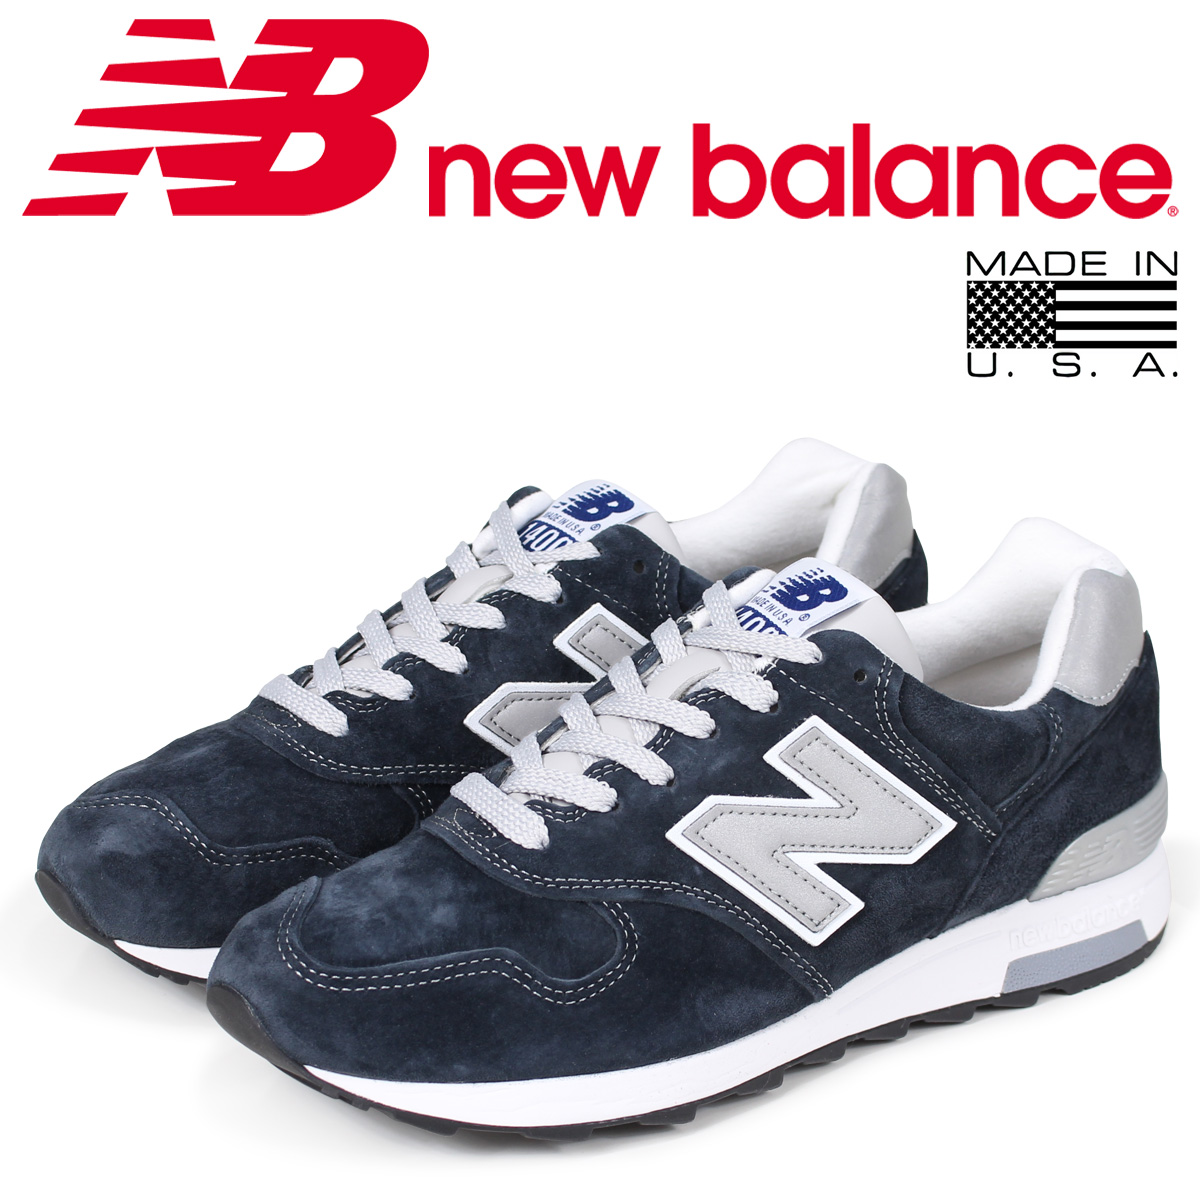 new balance 1400 online shop